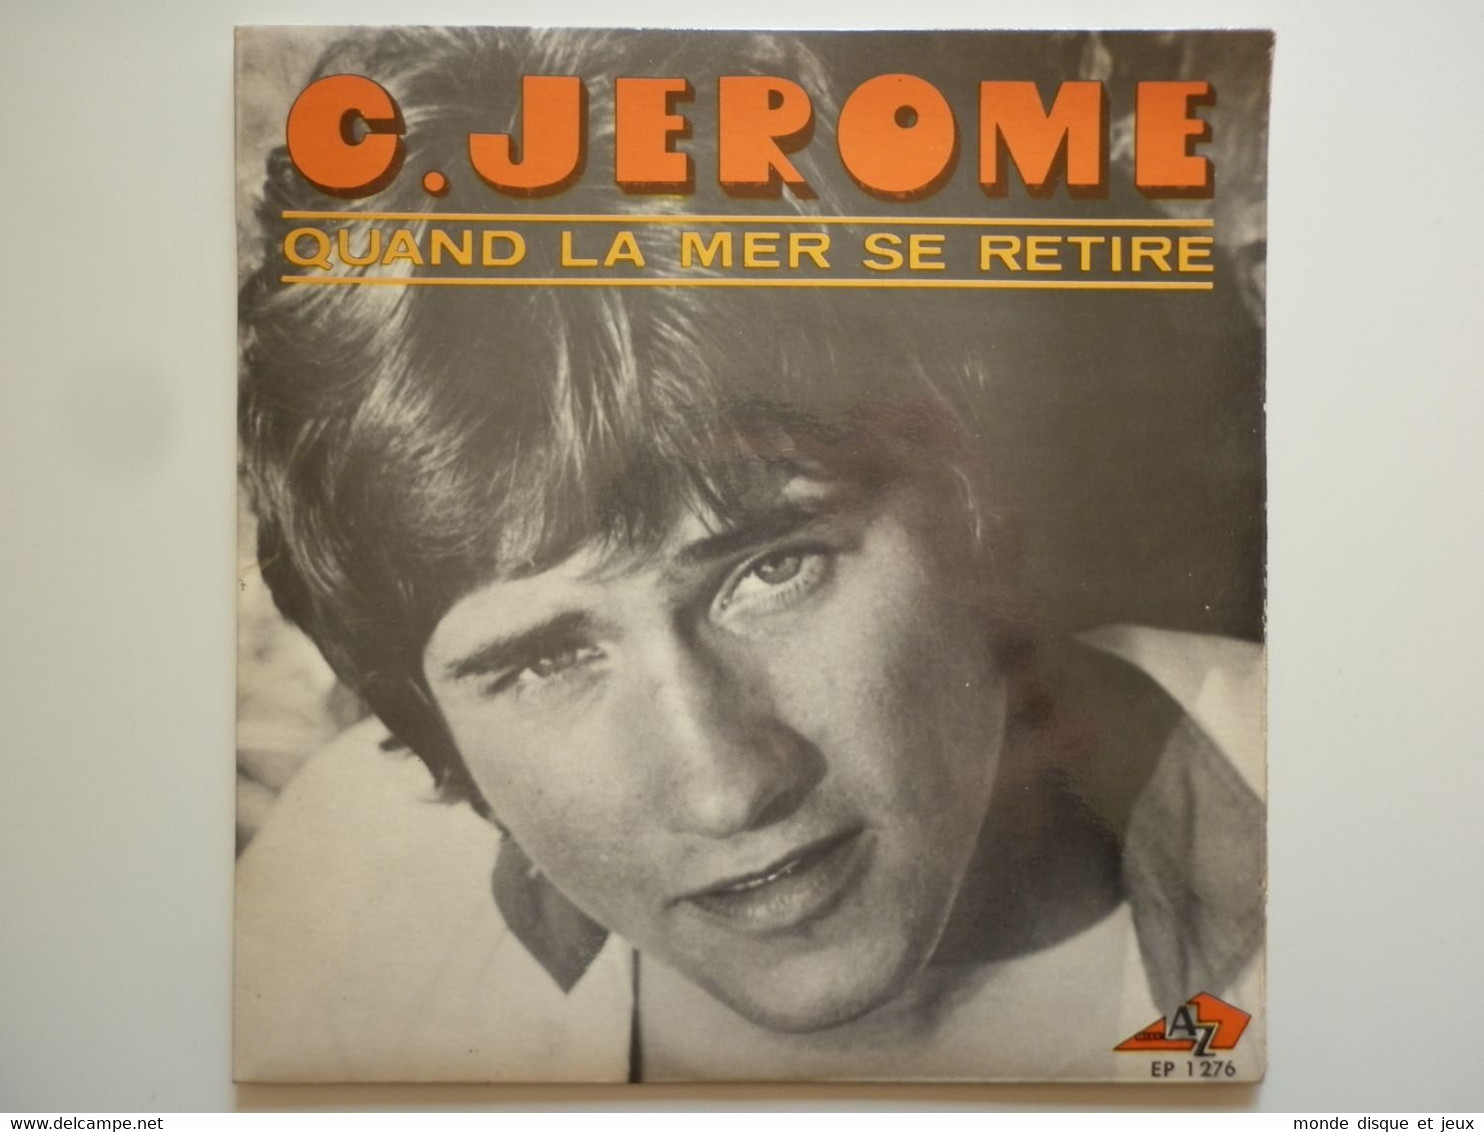 C.Jerome 45Tours EP Vinyle Quand La Mer Se Retire Mint - 45 T - Maxi-Single